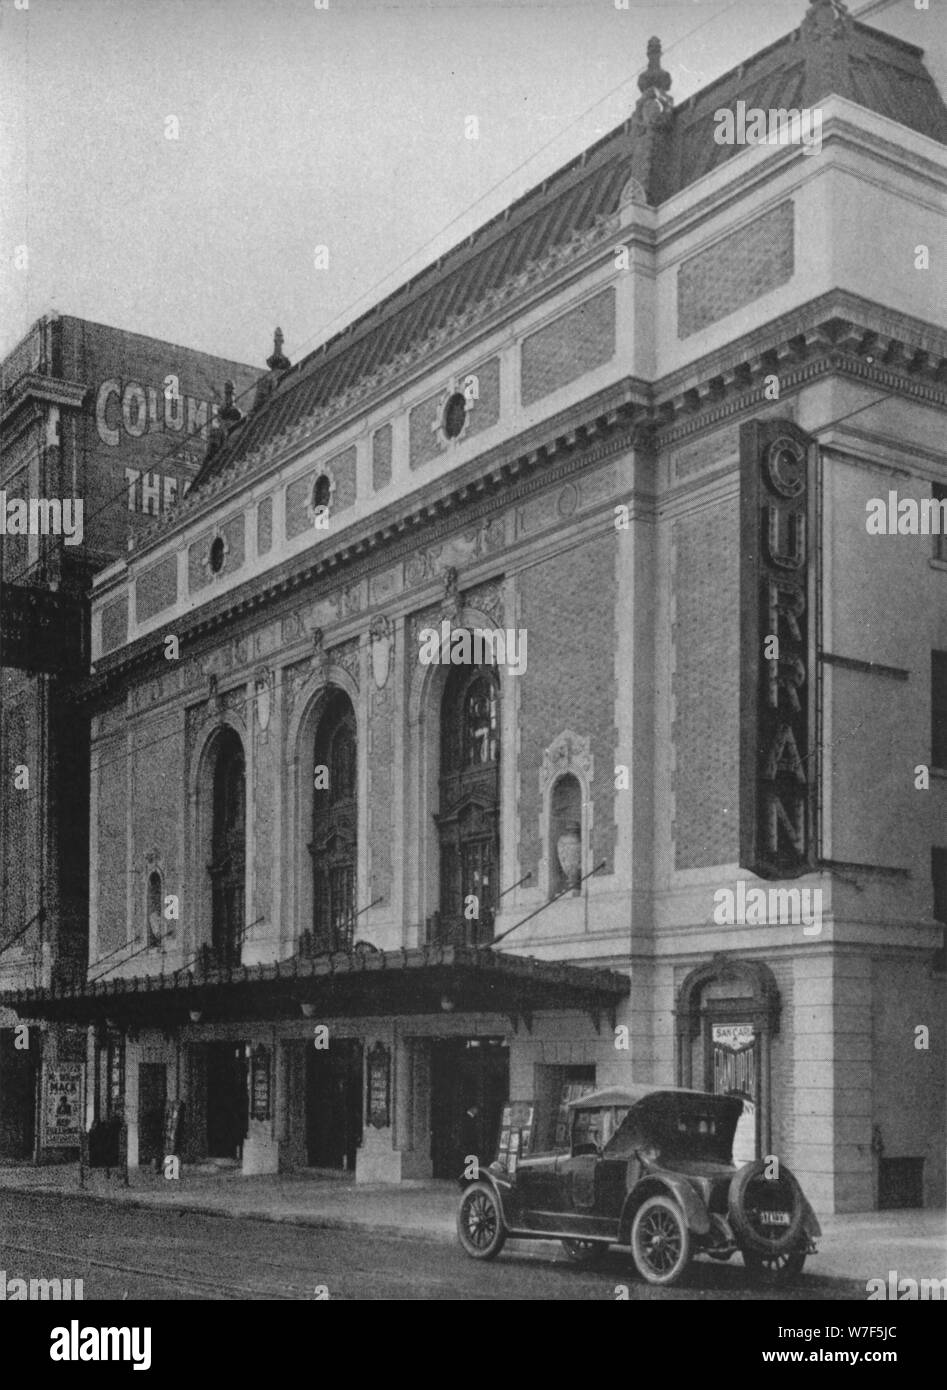 Entrance facade, the Curran Theatre, San Francisco, California, 1925. Artist: Unknown. Stock Photo